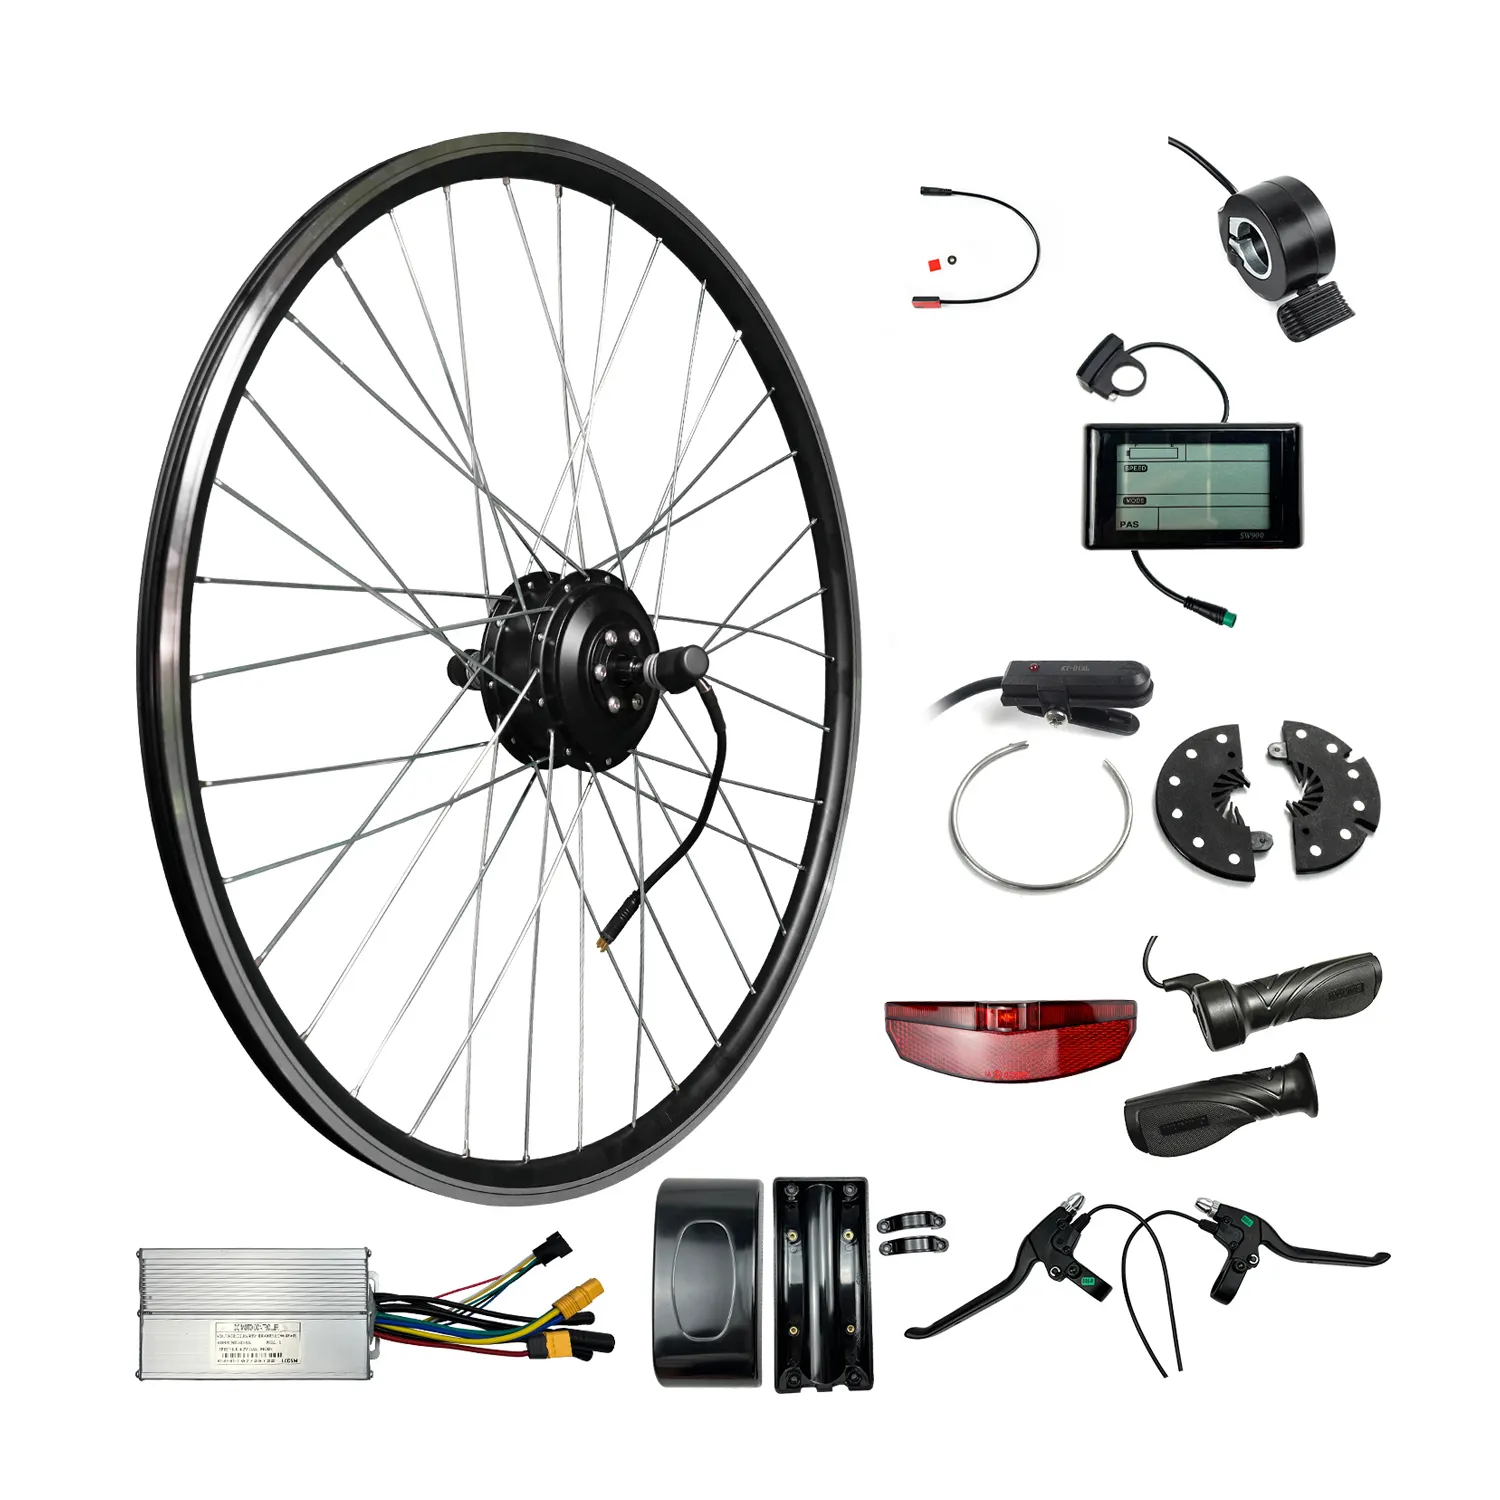 Roda sepeda listrik, e-bike rem depan belakang Kit lampu untuk 36v 48v Batt mudah dipasang sepeda Motor listrik Kit baterai Lithium LCD 24 "roda sepeda